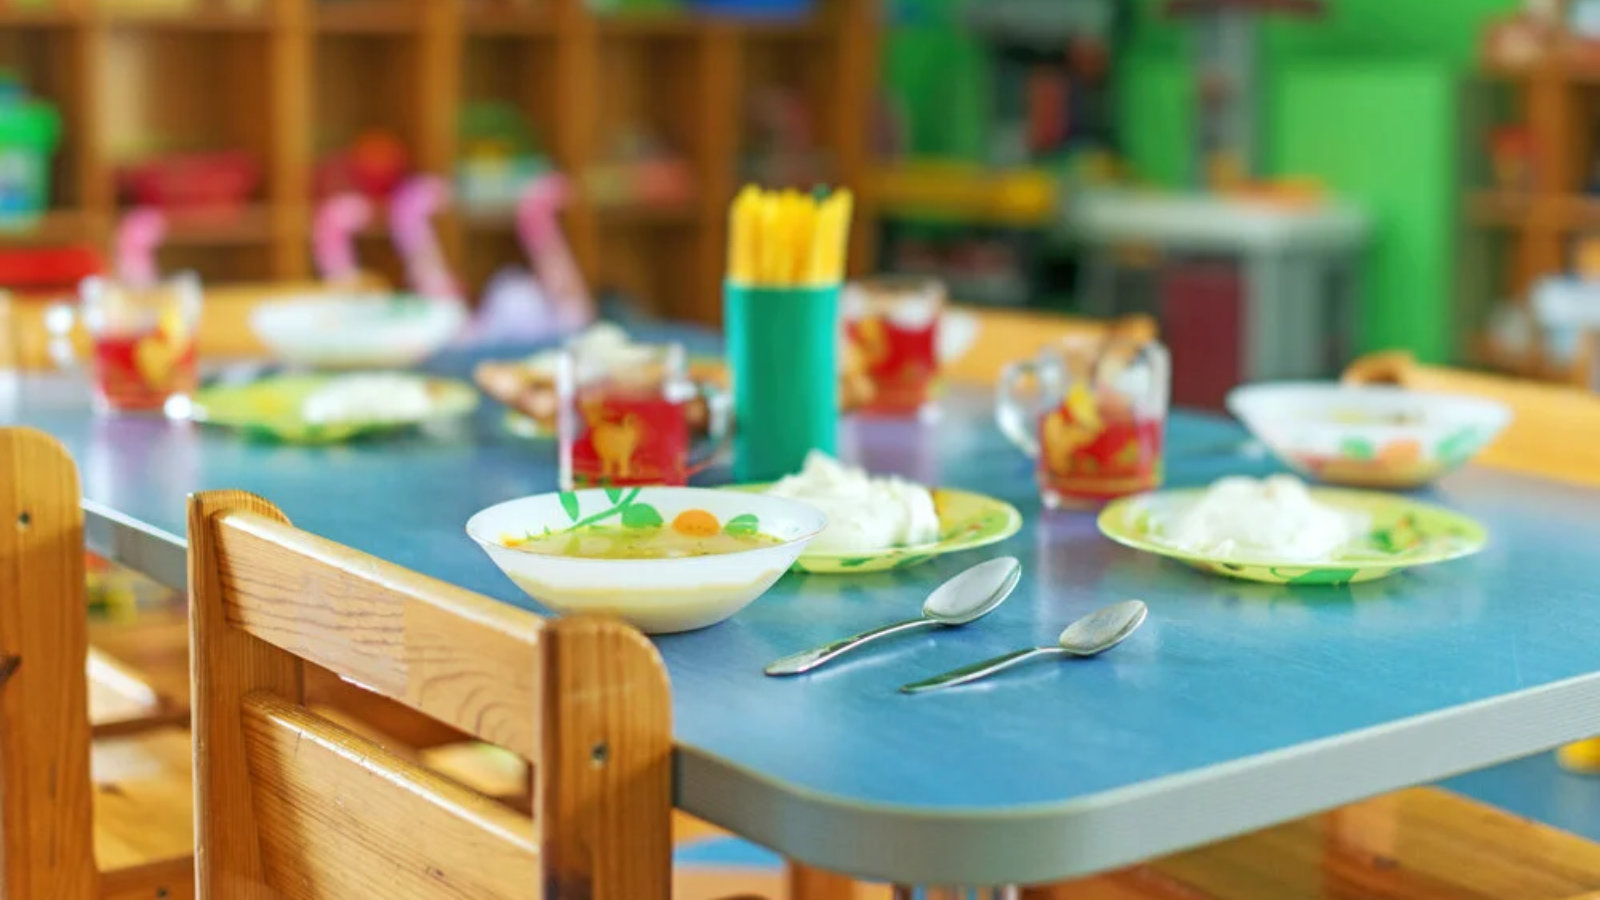 School detsad ru health. Питание в детском саду. Еда в садике. Обед в детском саду. Питание в детских садах.